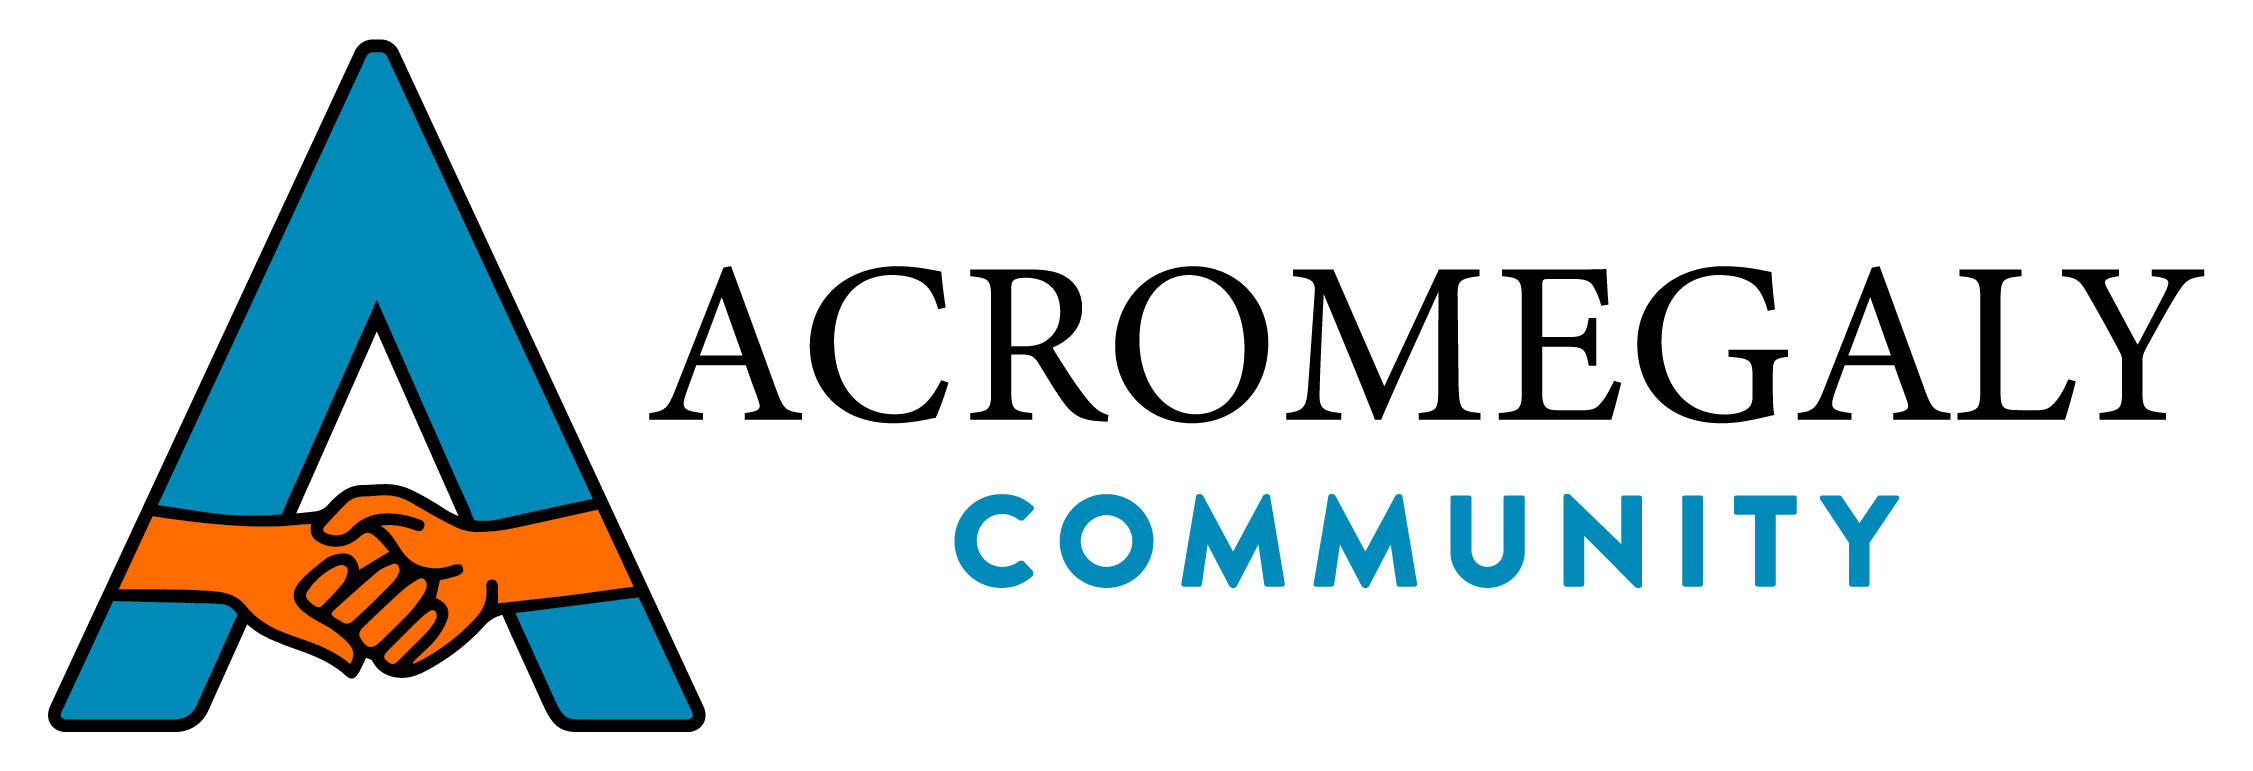 Acromegaly Community Inc. logo